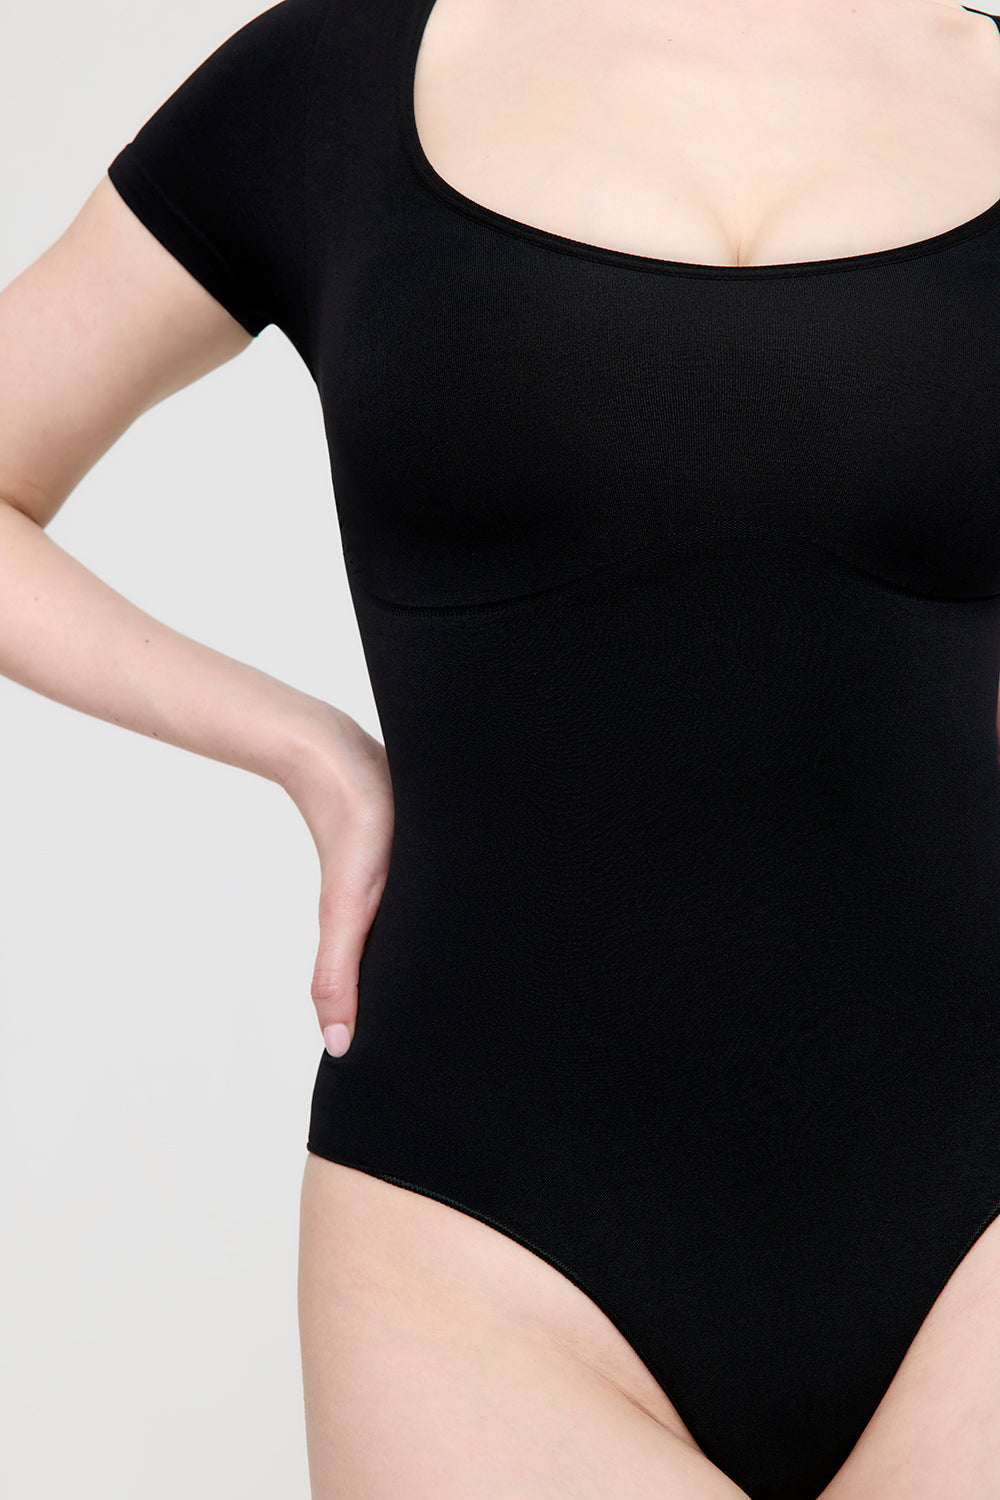 CalmCare Bodysuit - Short Sleeve